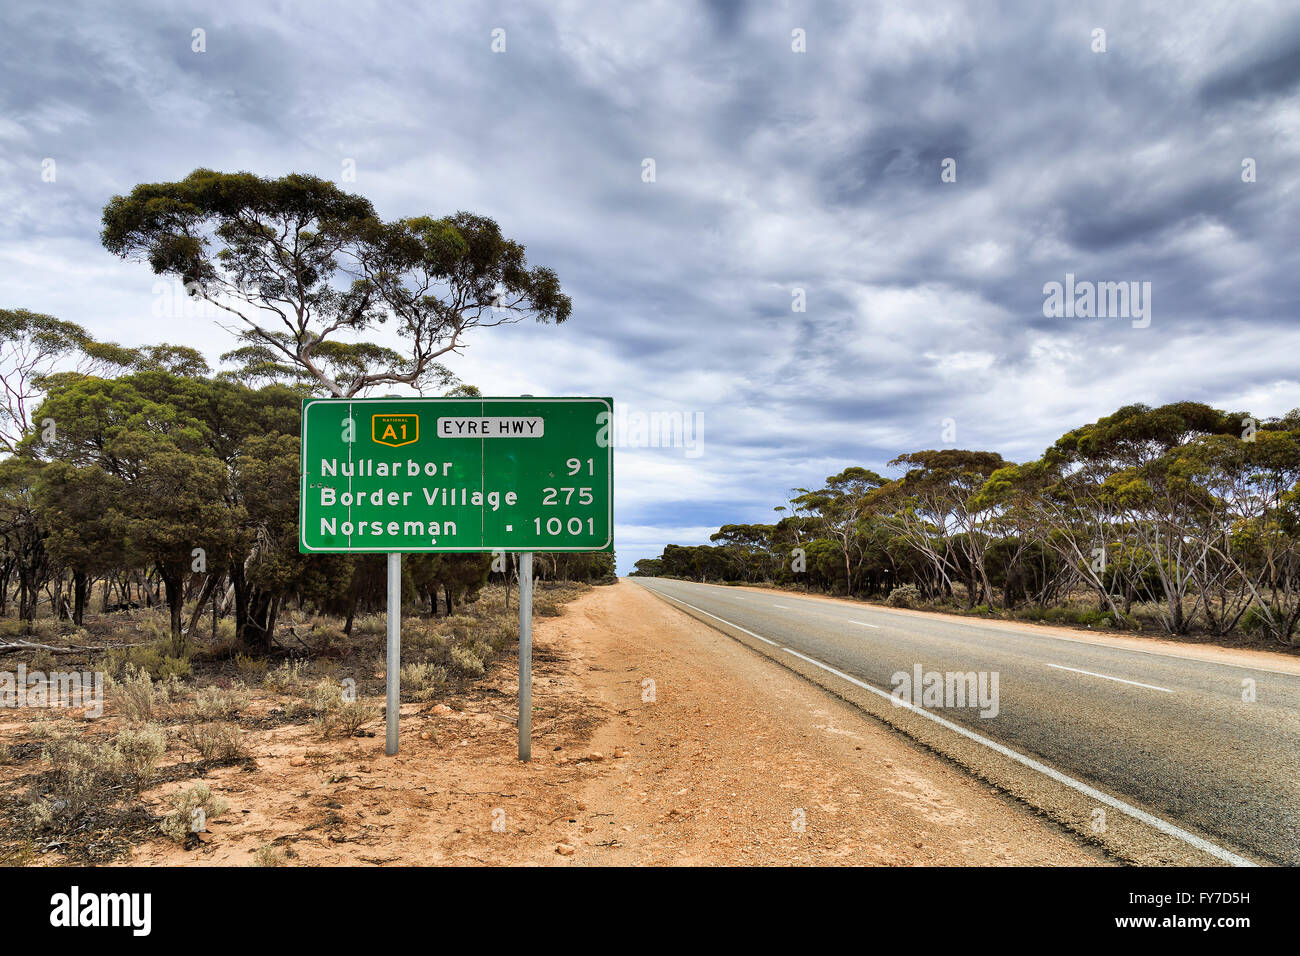 Green road sign le long d'Eyre National l'autoroute A1 dans le sud de l'Australie quelque part dans la plaine du Nullarbor avec seulement un arbre Banque D'Images